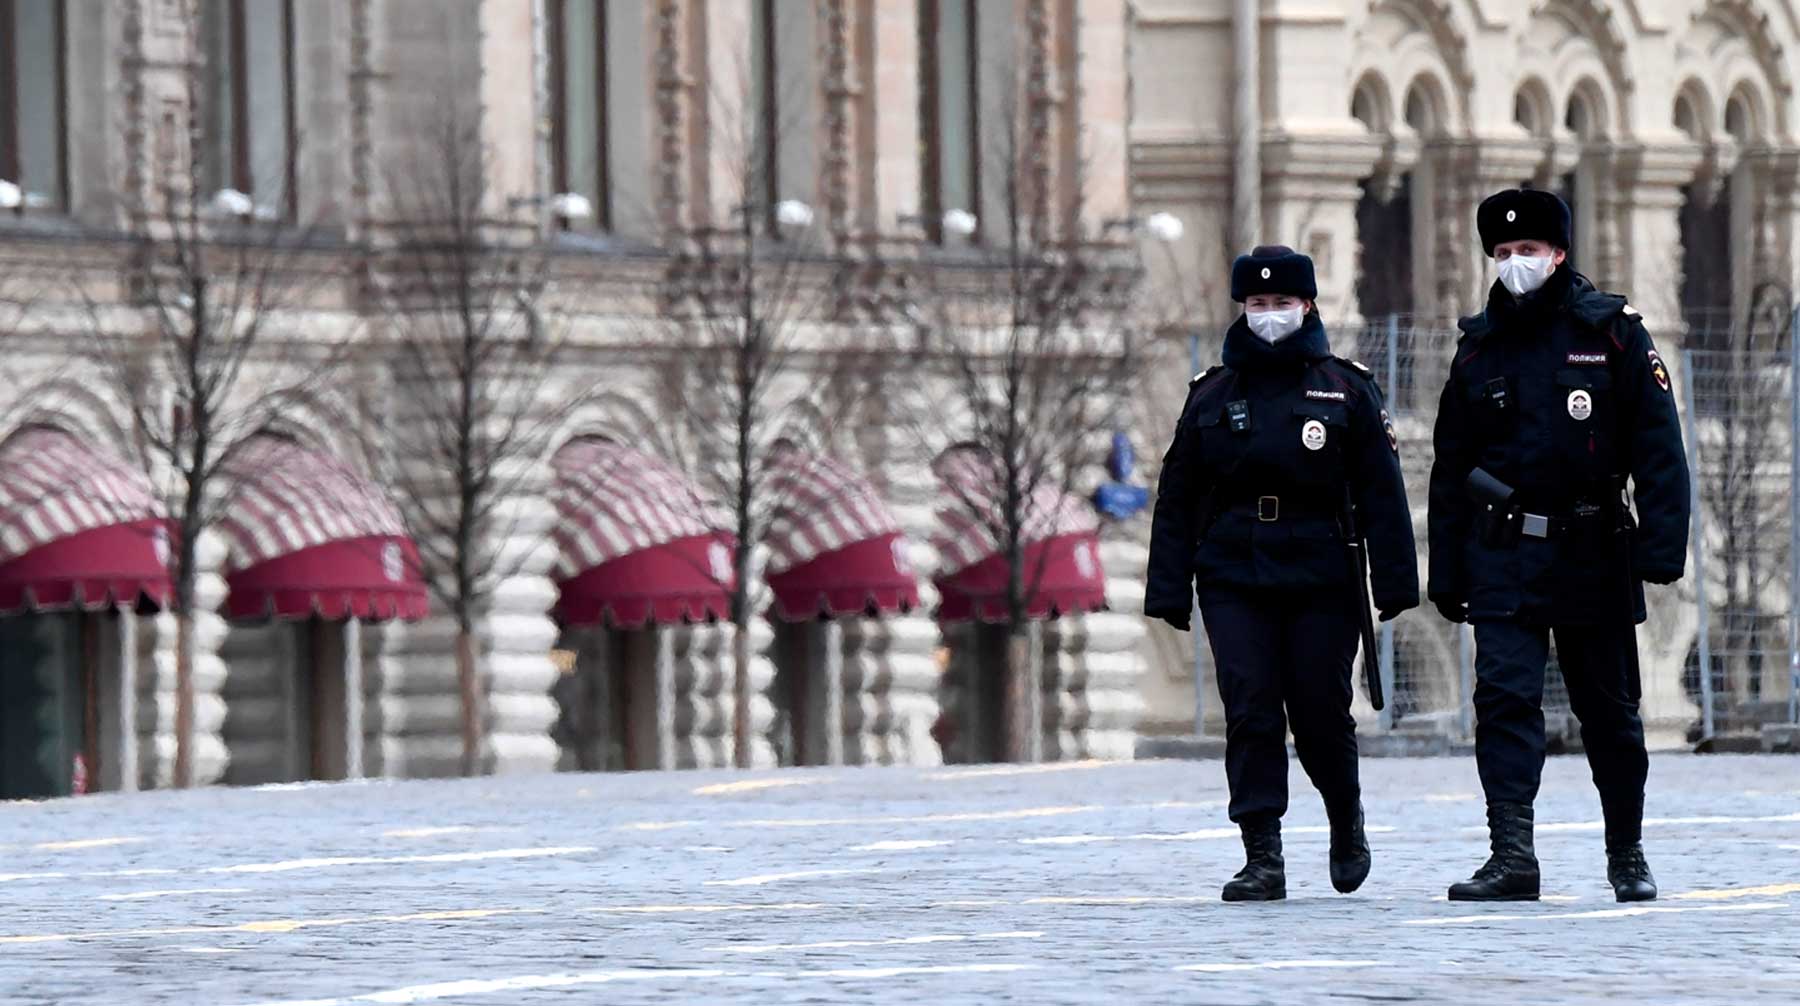 Сейчас правоохранители работают с повышенной нагрузкой, рассказали в Кремле Фото: © Global Look Press